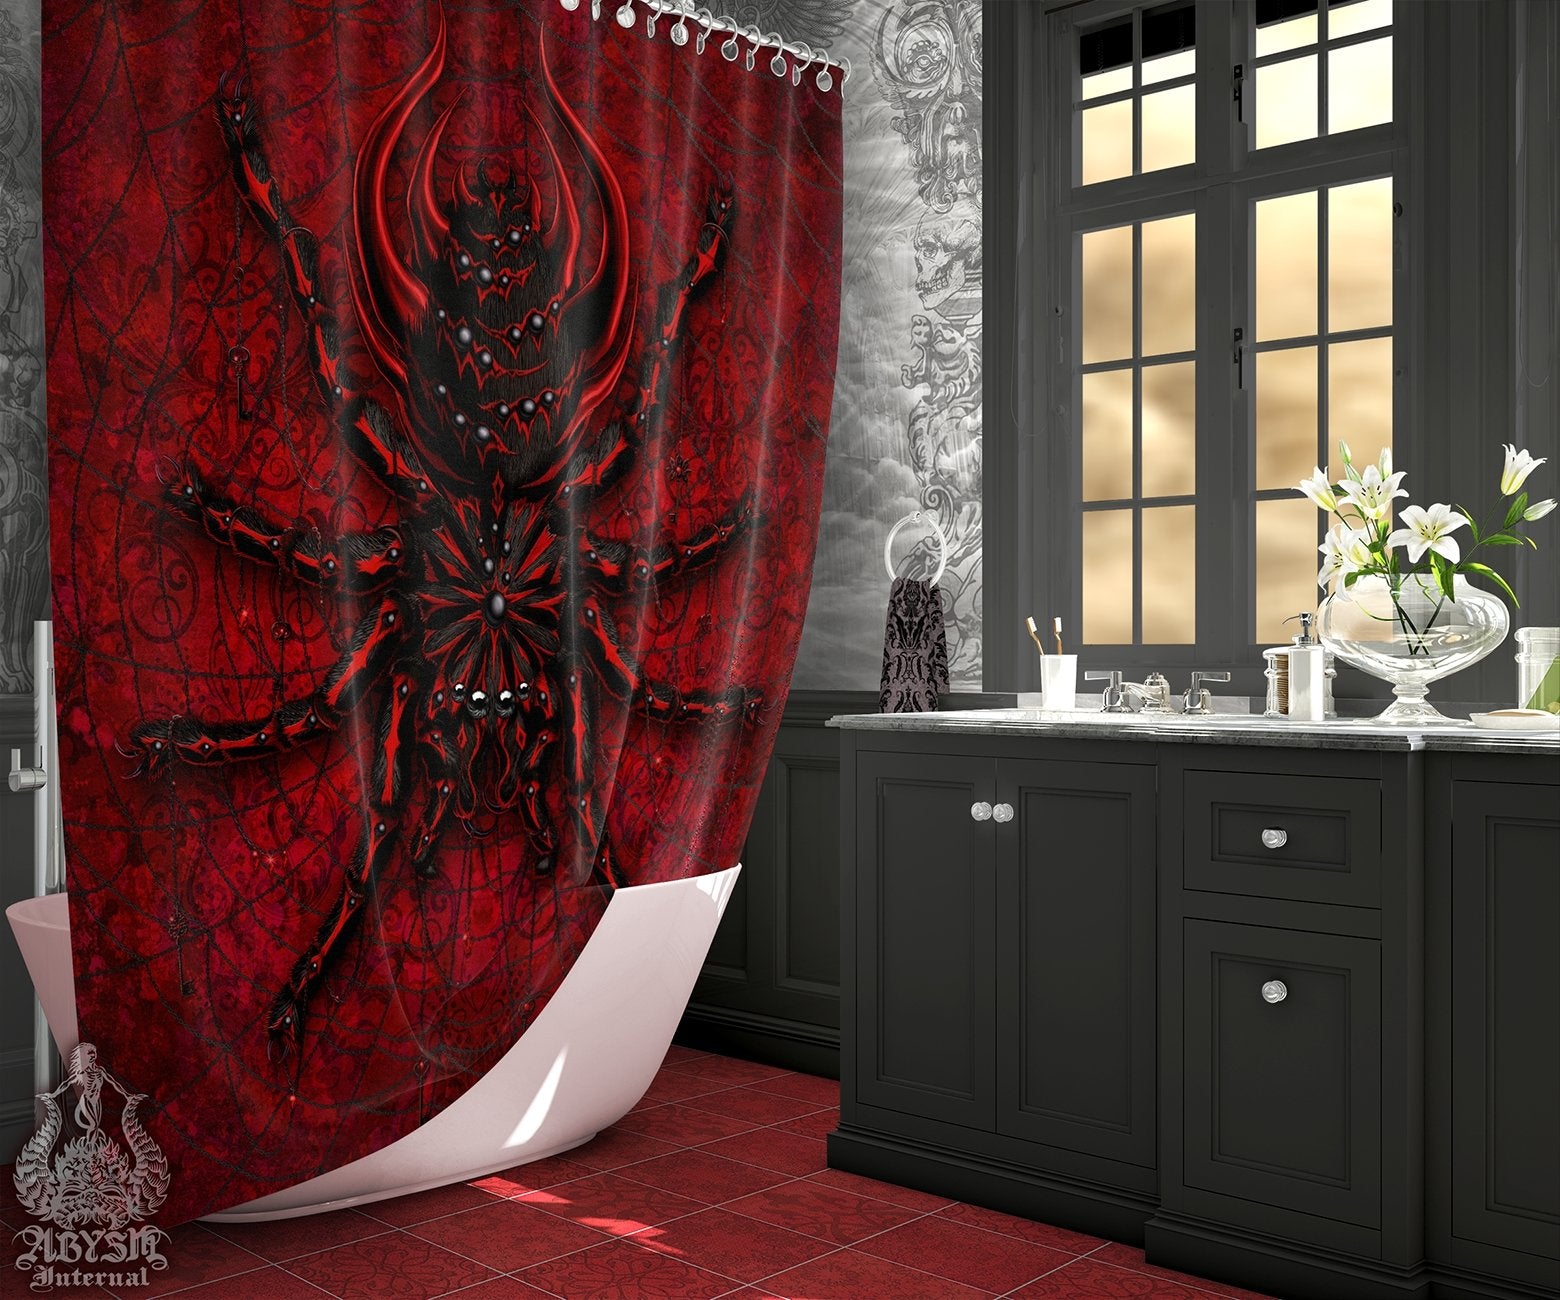 Gothic Shower Curtain, Goth Bathroom Decor - Spider, Bloody Red & Black, Tarantula Art - Abysm Internal